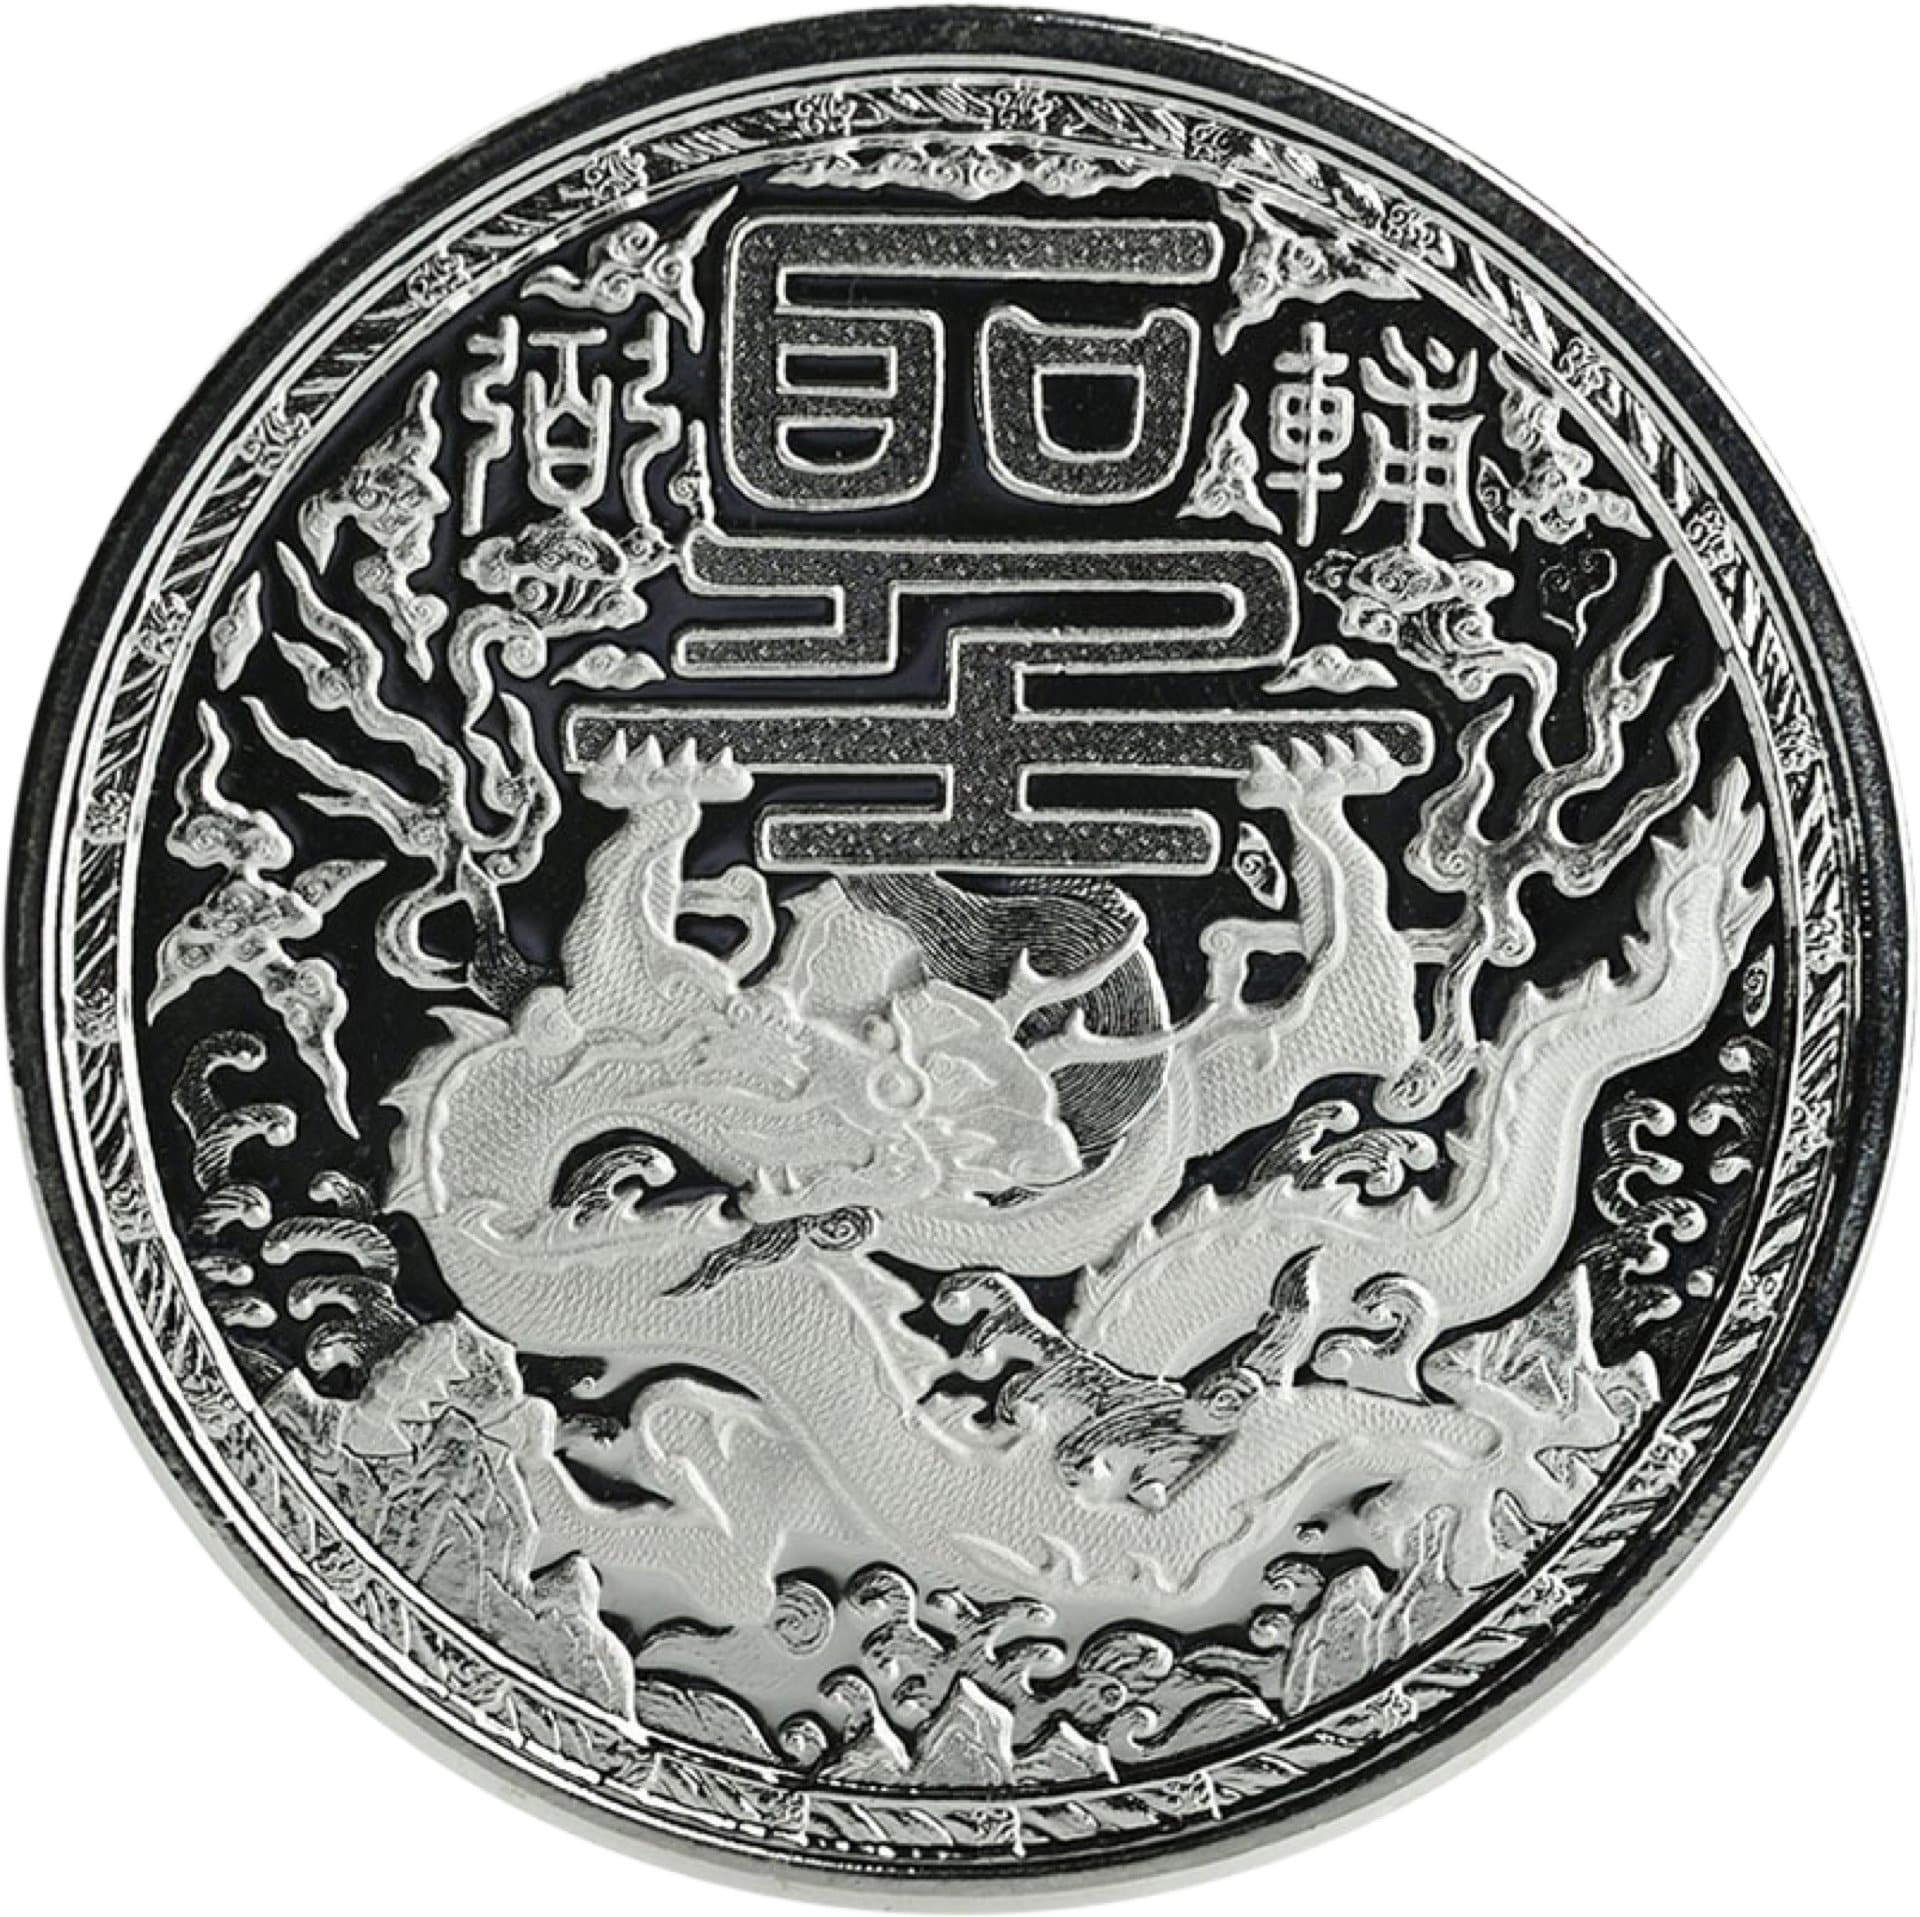 1 Unze Silber Imperial Dragon 2018 (Auflage: 25.000 Stück)